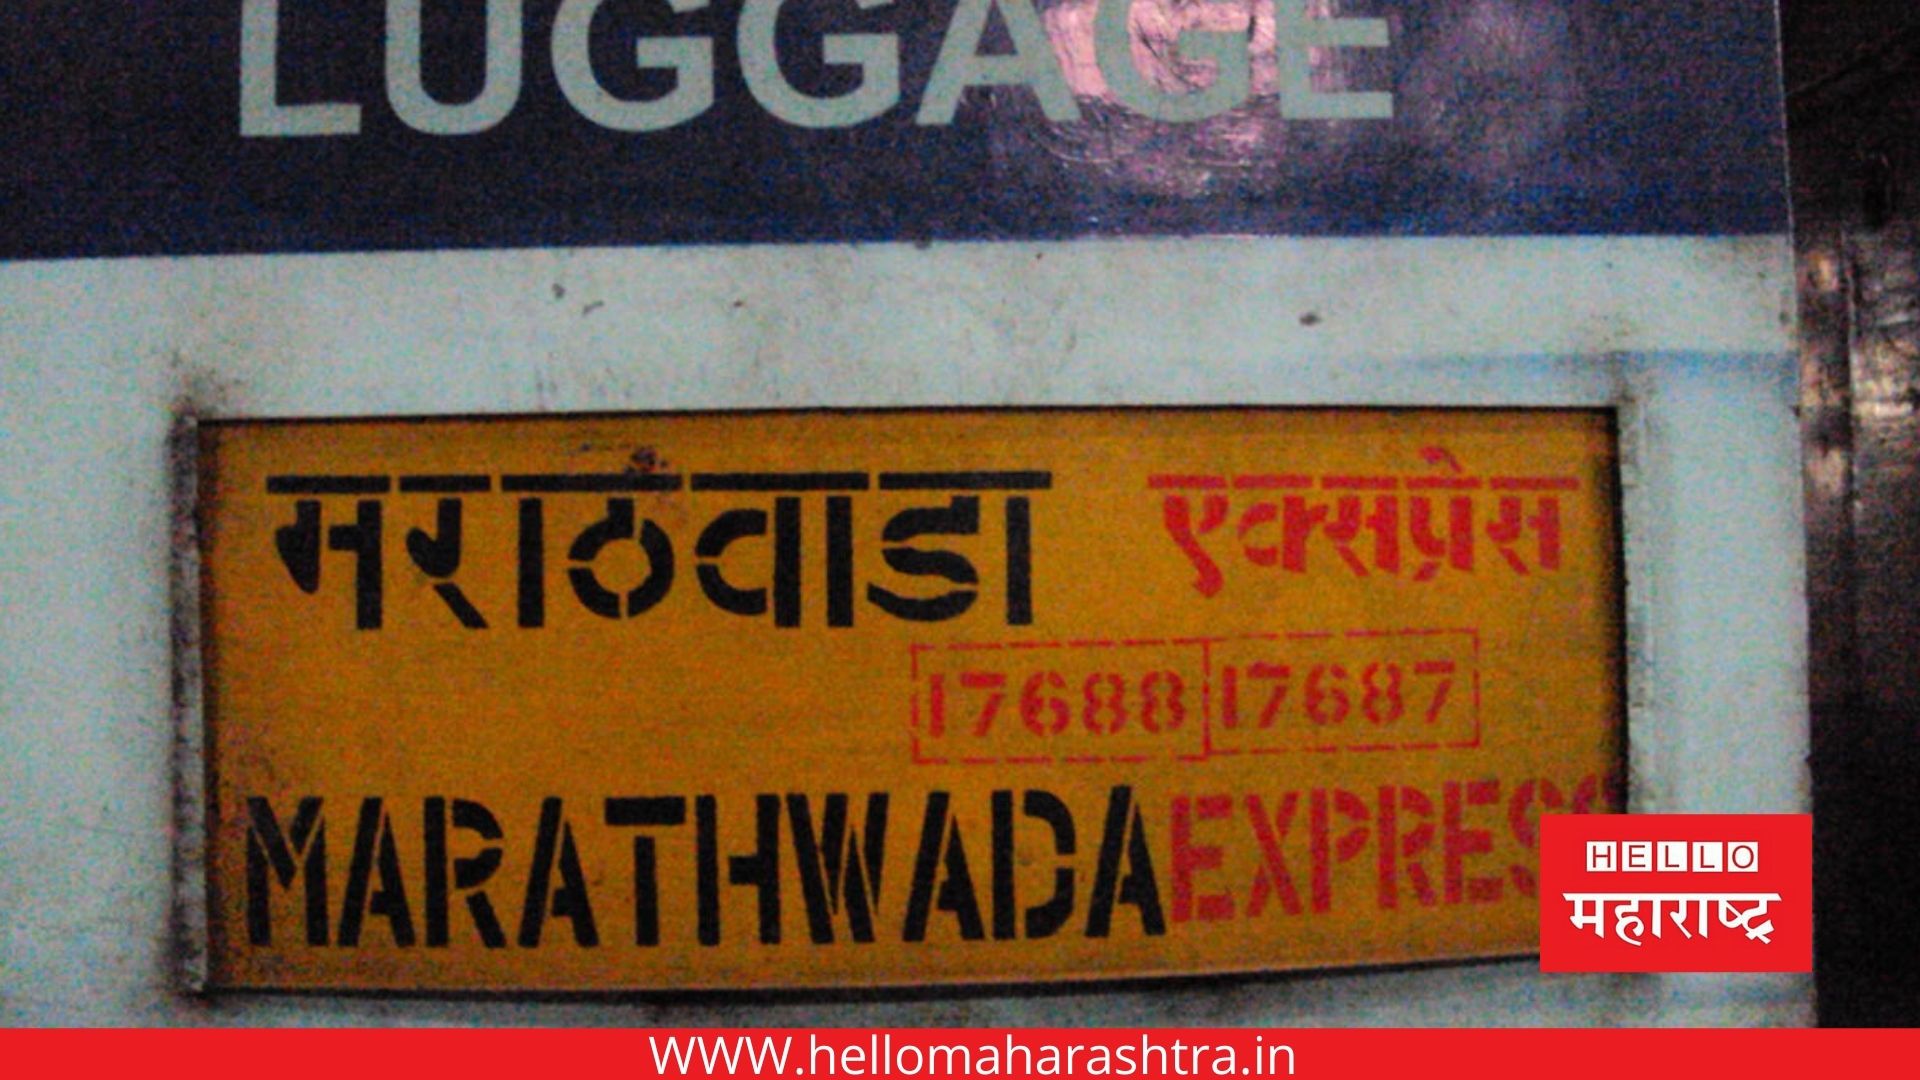 Marathwada Express